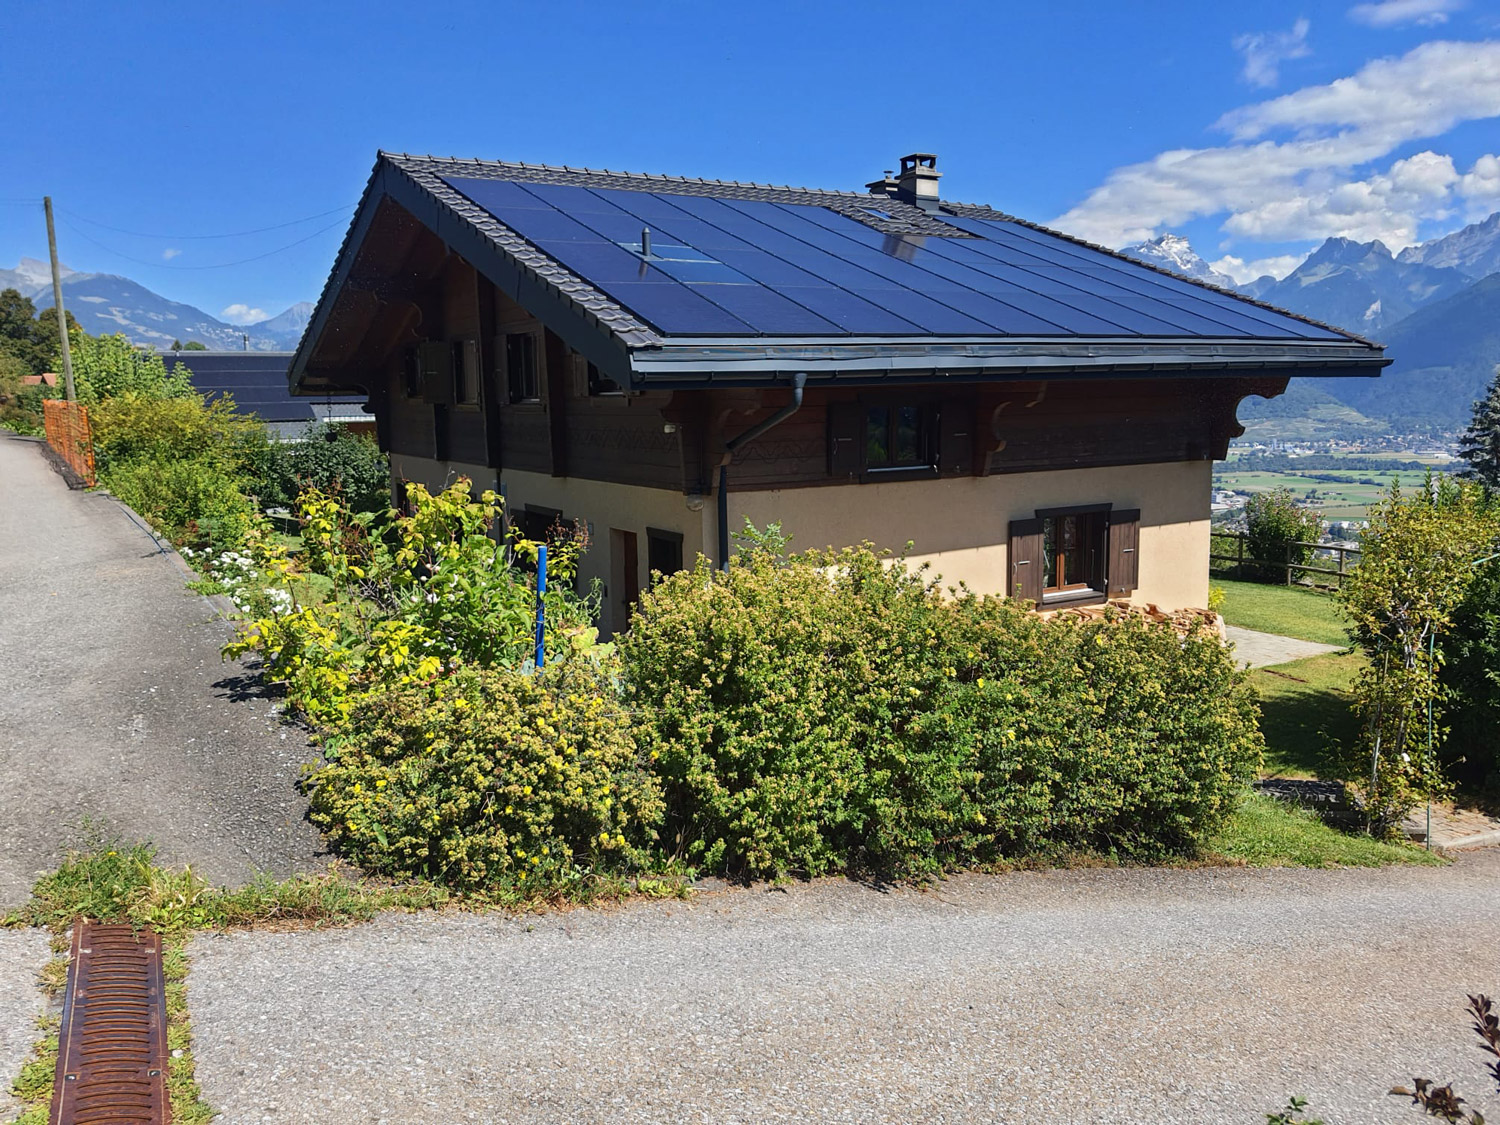 EvoSun-Accueil-Service-photovoltaique